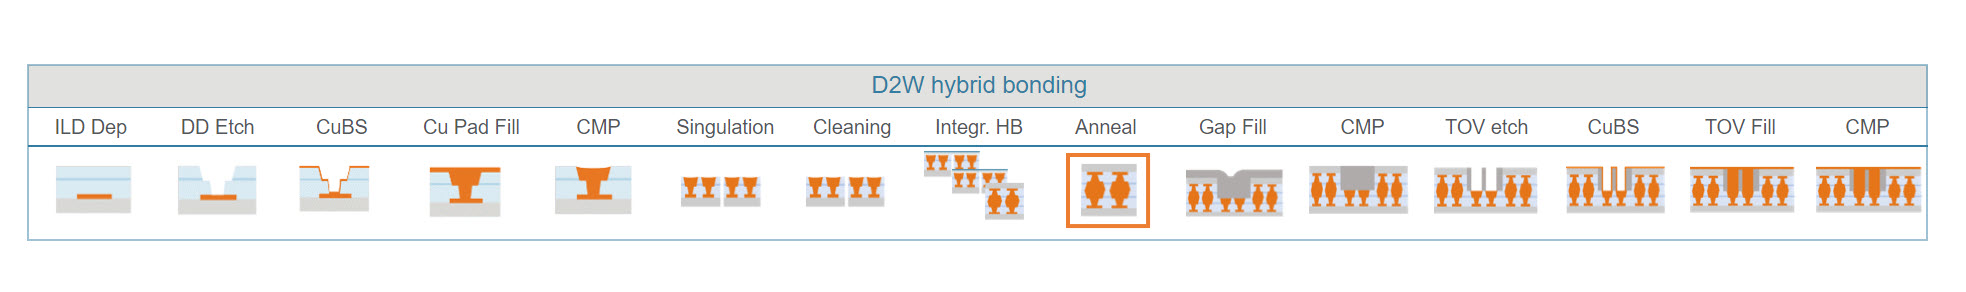 Hybrid Bonding2